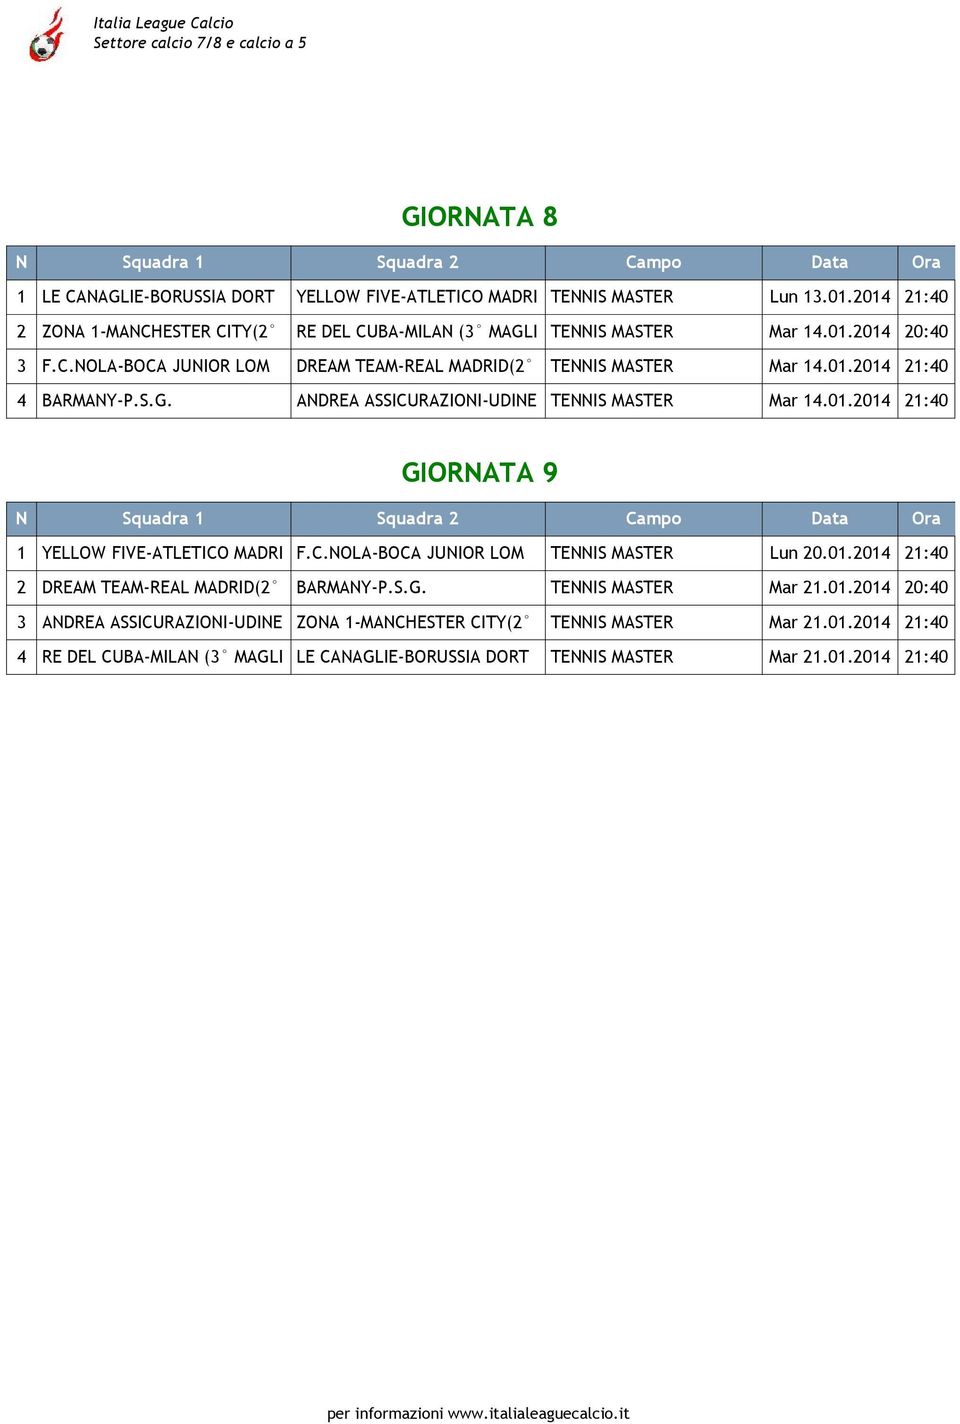 S.G. ANDREA ASSICURAZIONI-UDINE TENNIS MASTER Mar 14.01.2014 21:40 GIORNATA 9 N Squadra 1 Squadra 2 Campo Data Ora 1 YELLOW FIVE-ATLETICO MADRI F.C.NOLA-BOCA JUNIOR LOM TENNIS MASTER Lun 20.01.2014 21:40 2 DREAM TEAM-REAL MADRID(2 BARMANY-P.